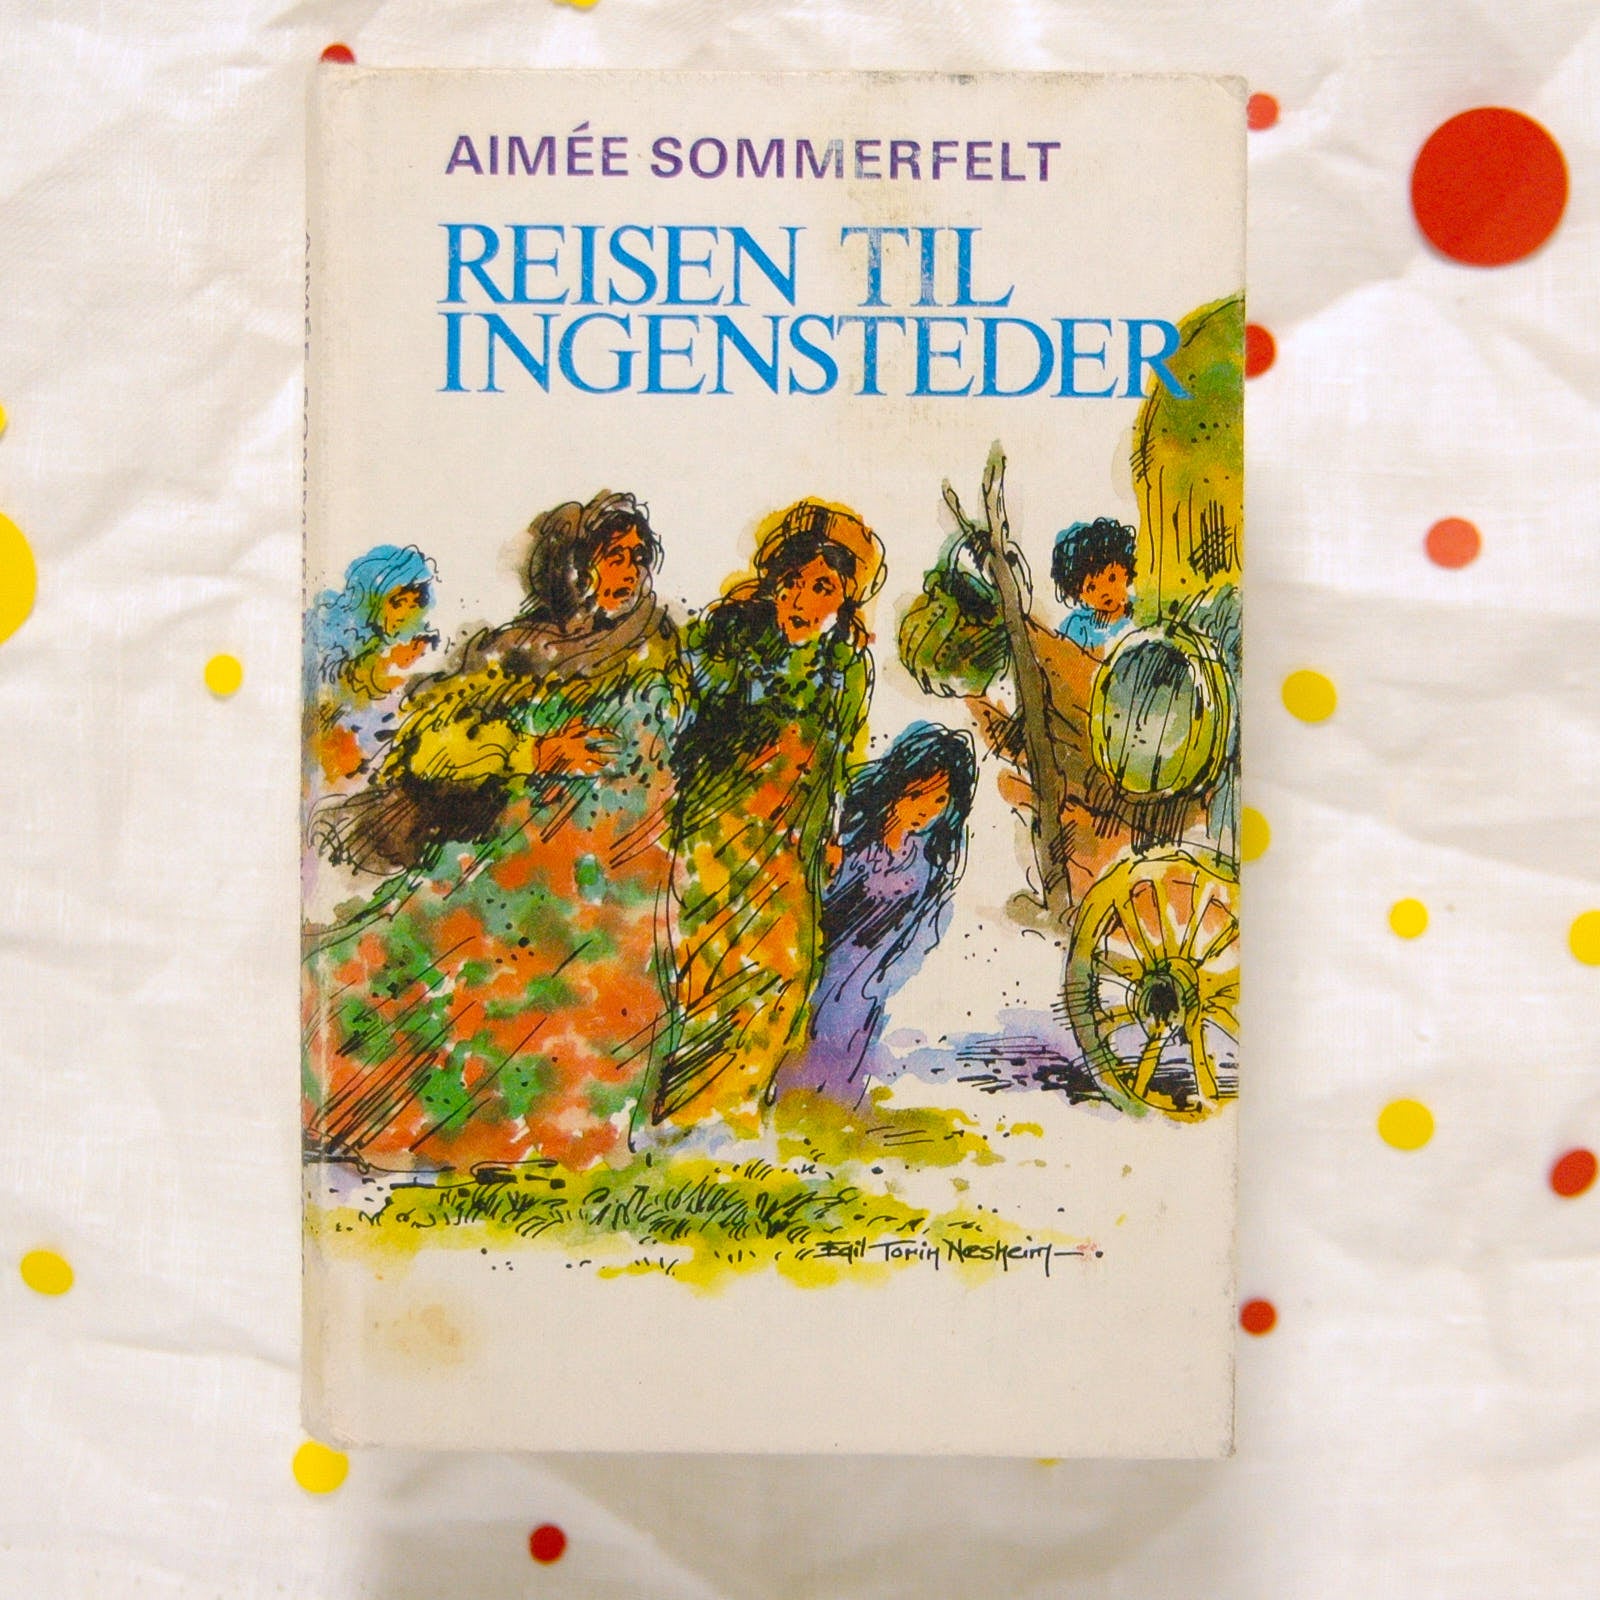 Reisen til ingensteder av Aimée Sommerfelt